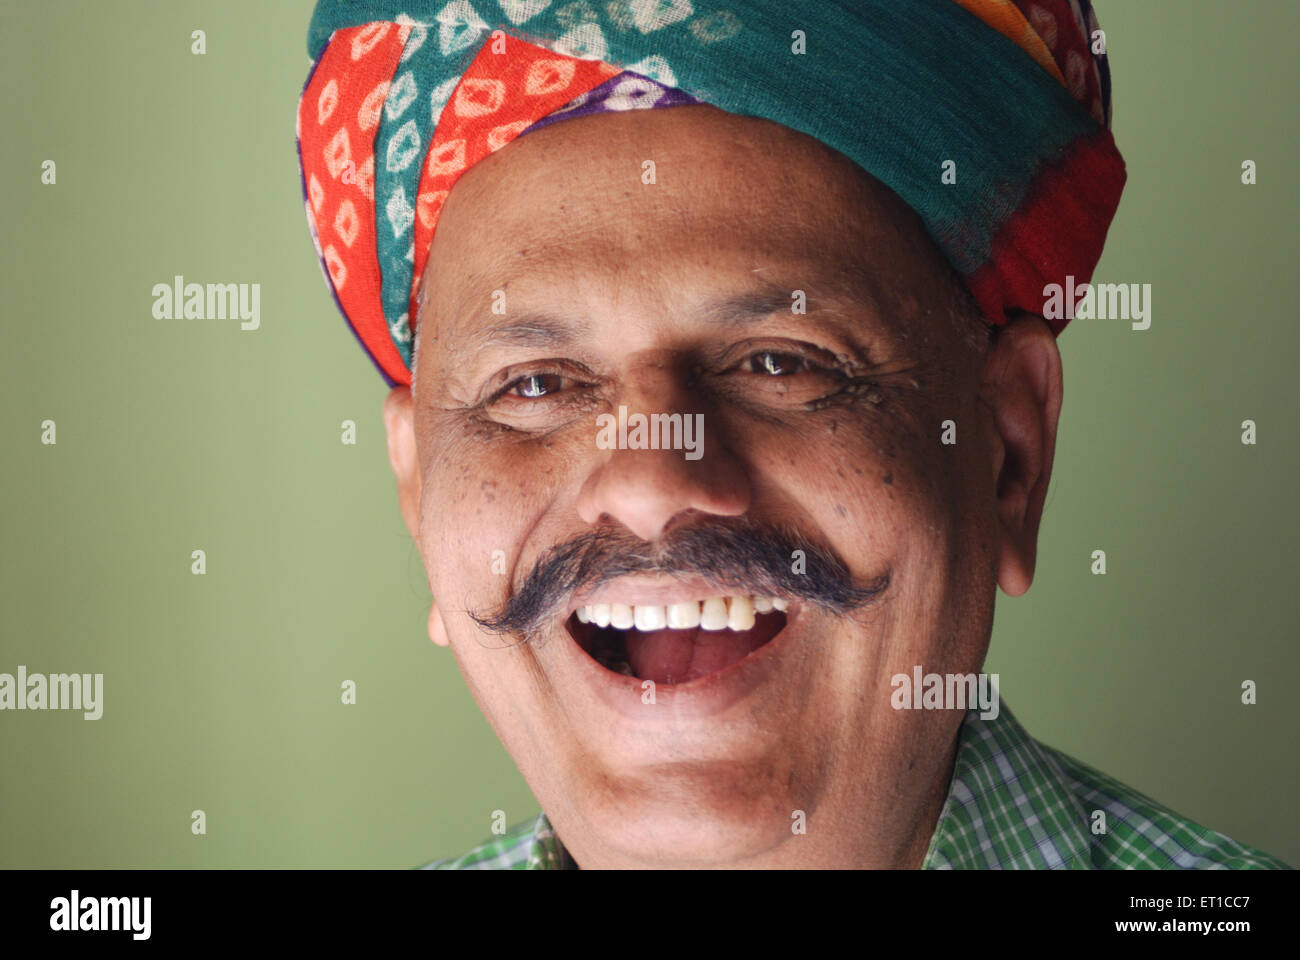 indian-man-laughing-mr704-jodhpur-rajasthan-india-asia-ET1CC7.jpg